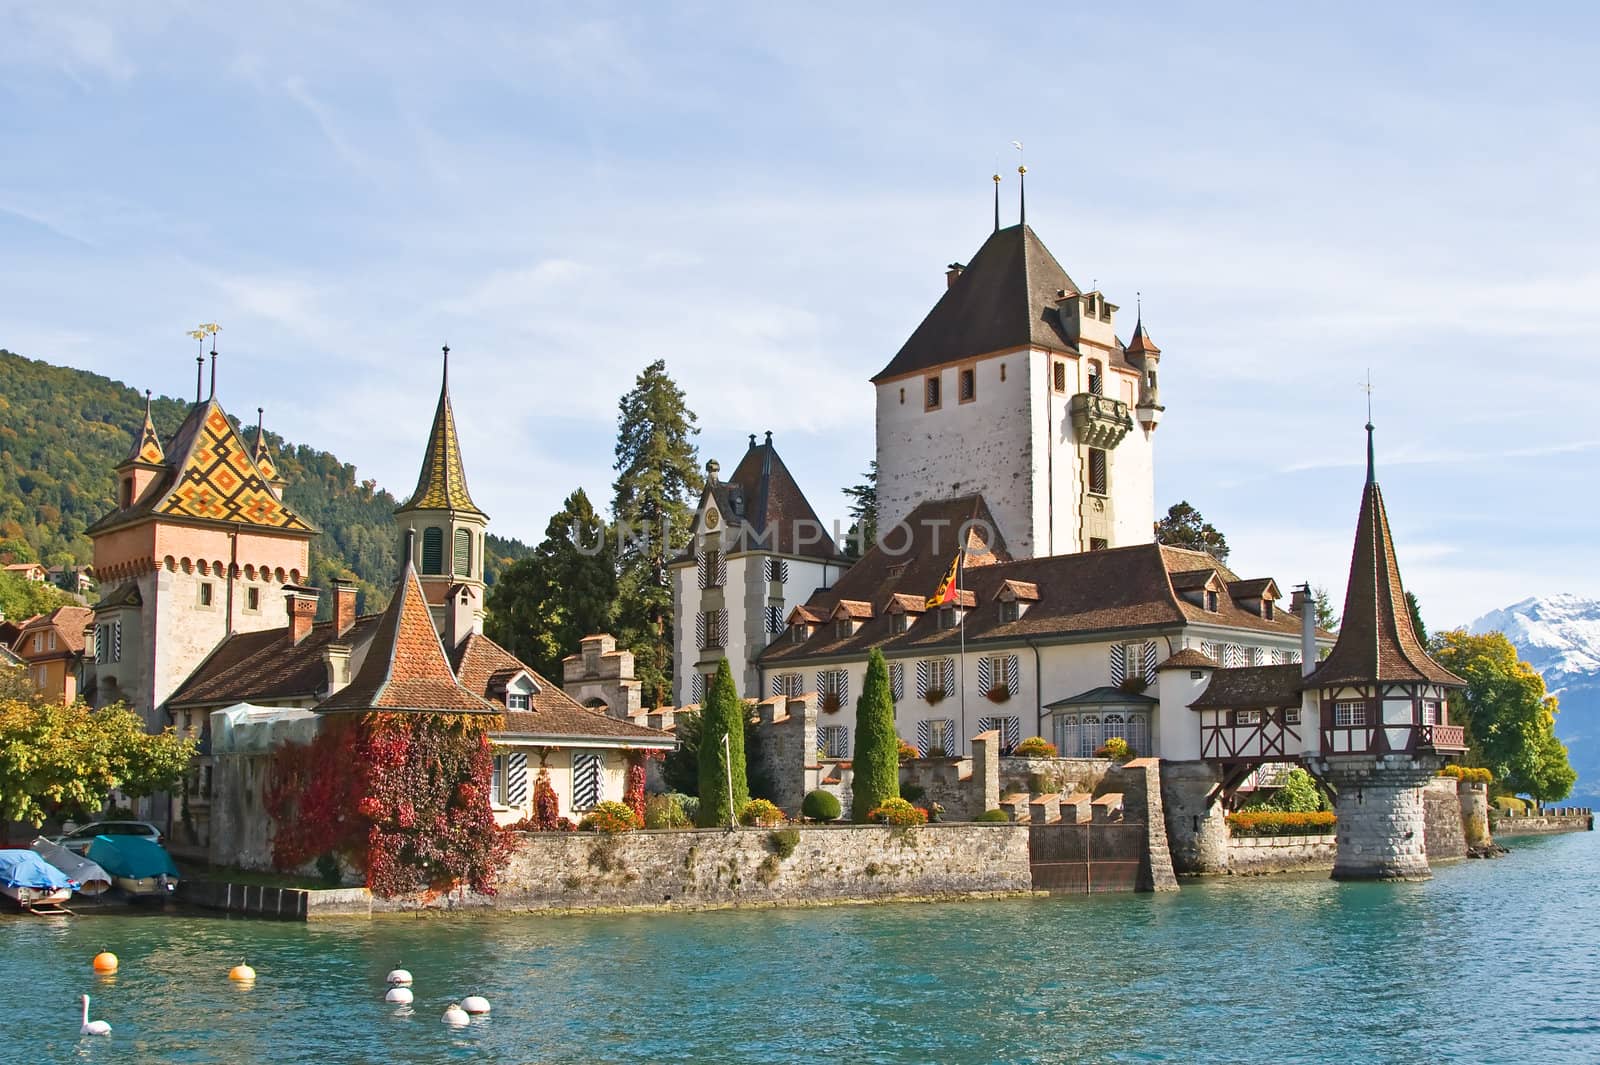 Oberhofen castle on the lake Thun, Jungfrau region, Switzerland)